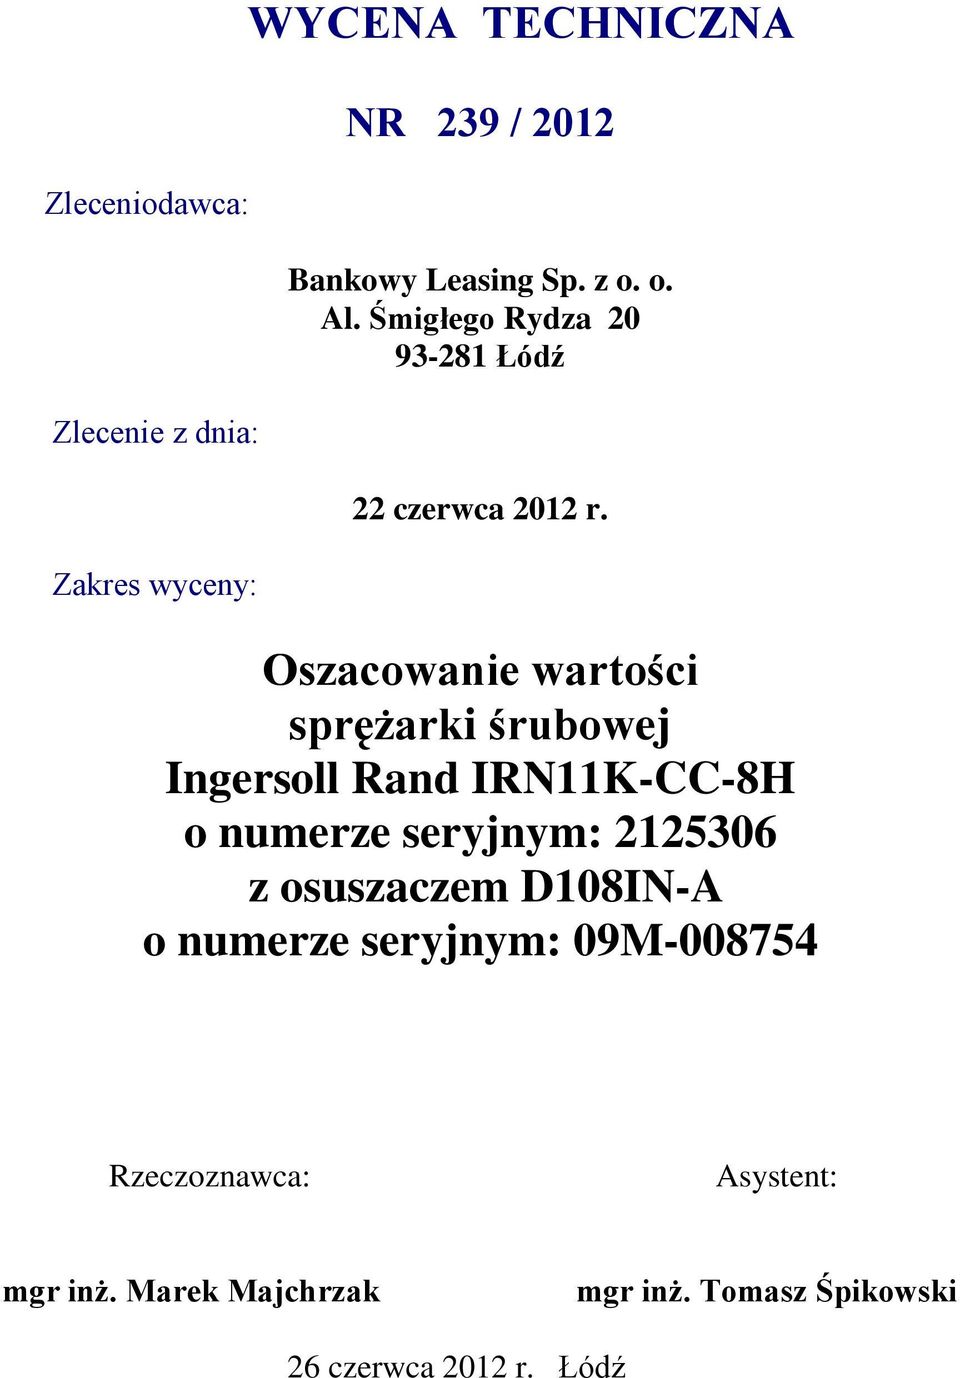 Oszacowanie wartości sprężarki śrubowej Ingersoll Rand IRN11K-CC-8H o numerze seryjnym: 2125306 z